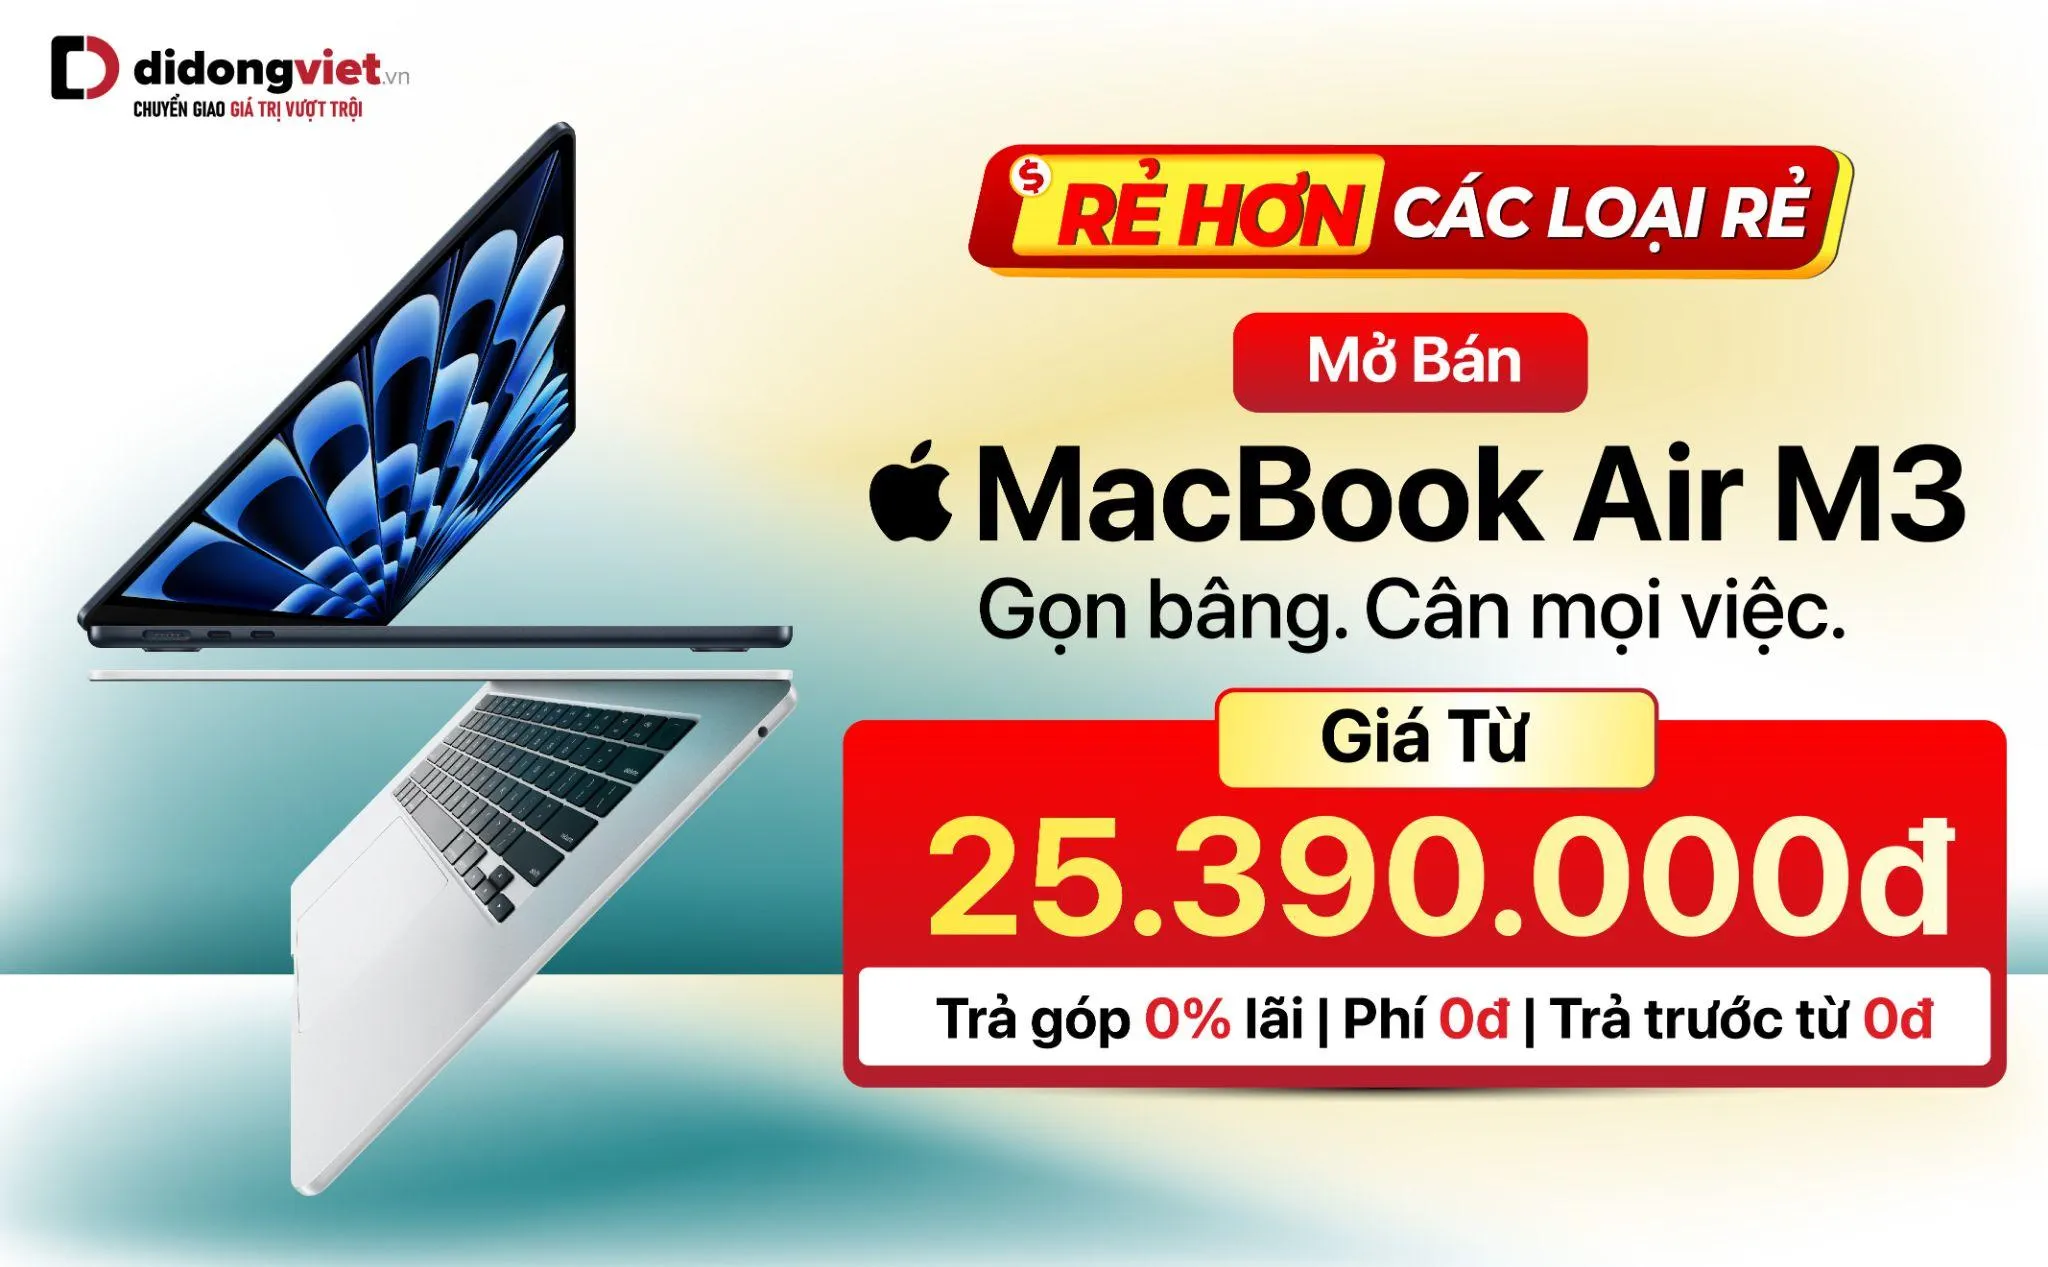 MacBook Air M3 vừa mở bán đã có deal hời: Giá cuối từ 25.39 triệu đồng, tặng thêm đến 3 triệu đồng, trả trước 0Đ